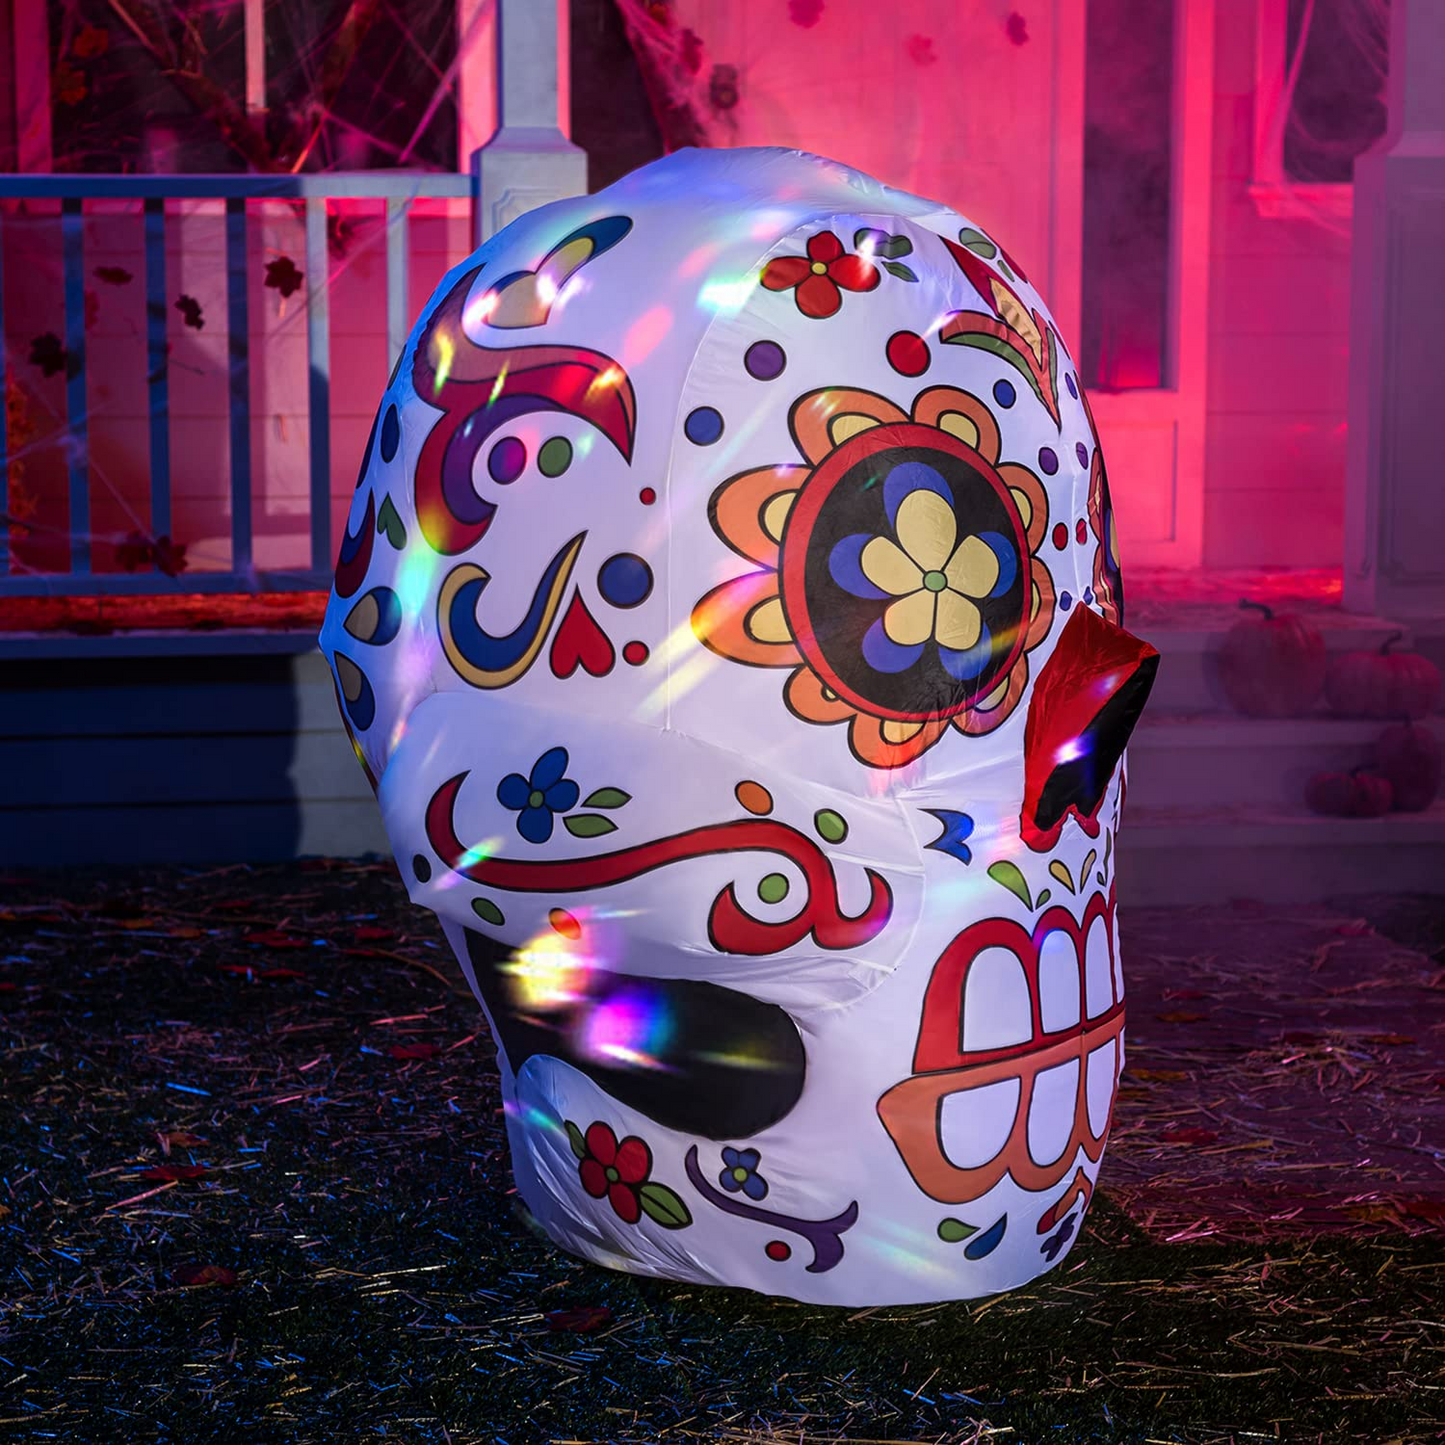 4 FT Tall Halloween Inflatable Dia de Los Muertos Calavera with Kaleidoscope Light